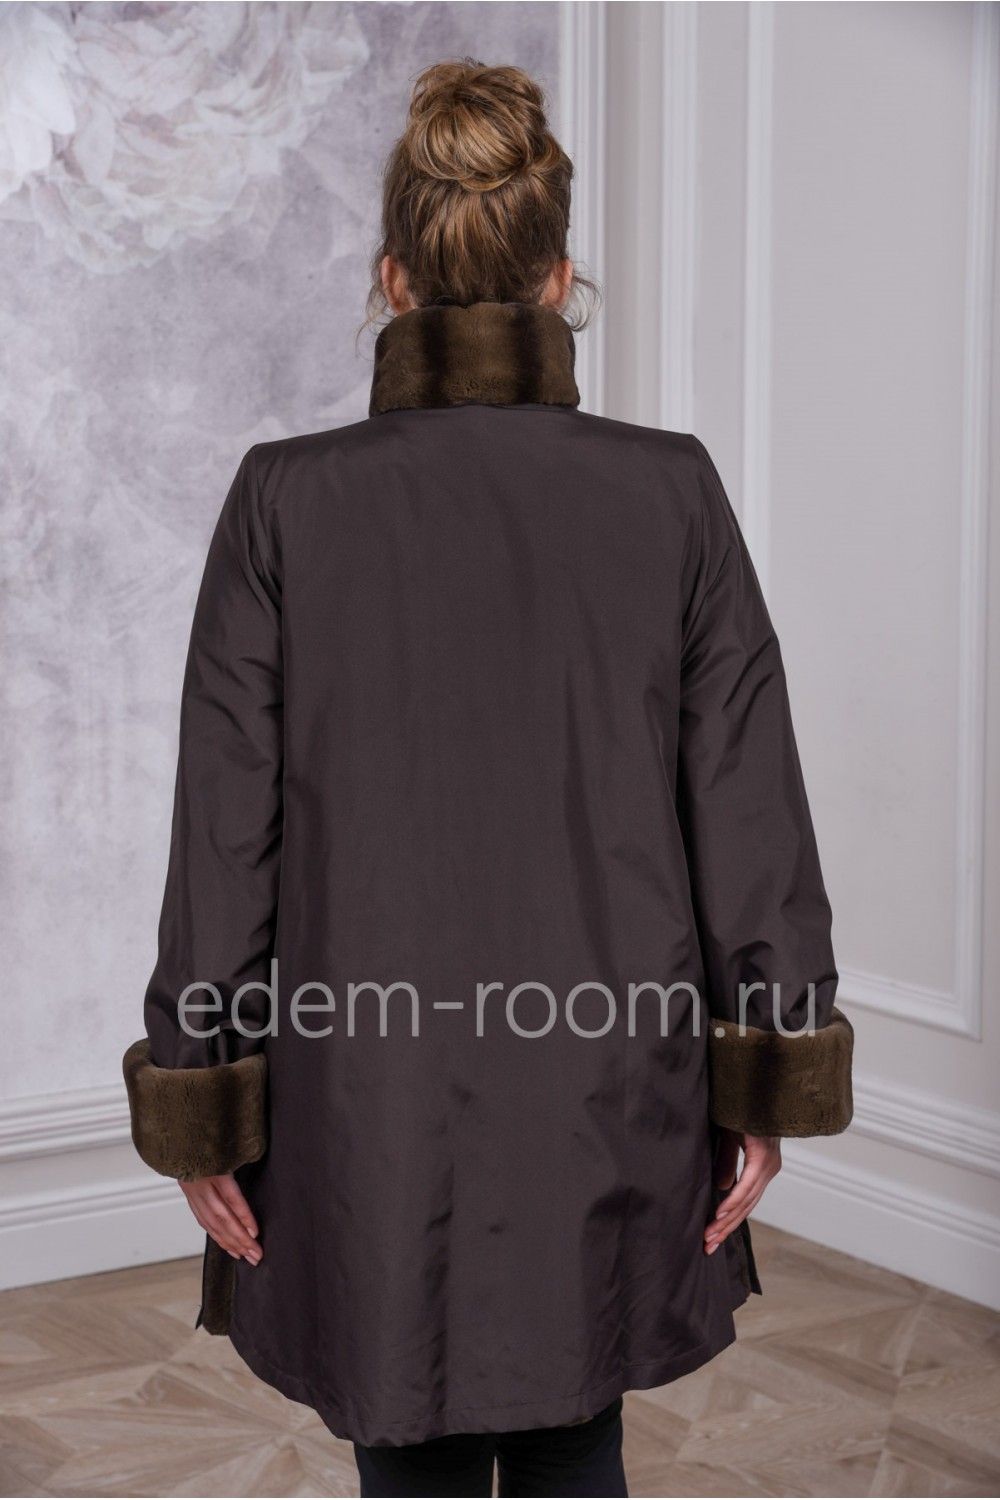 Женское меховое пальто на большие размеры